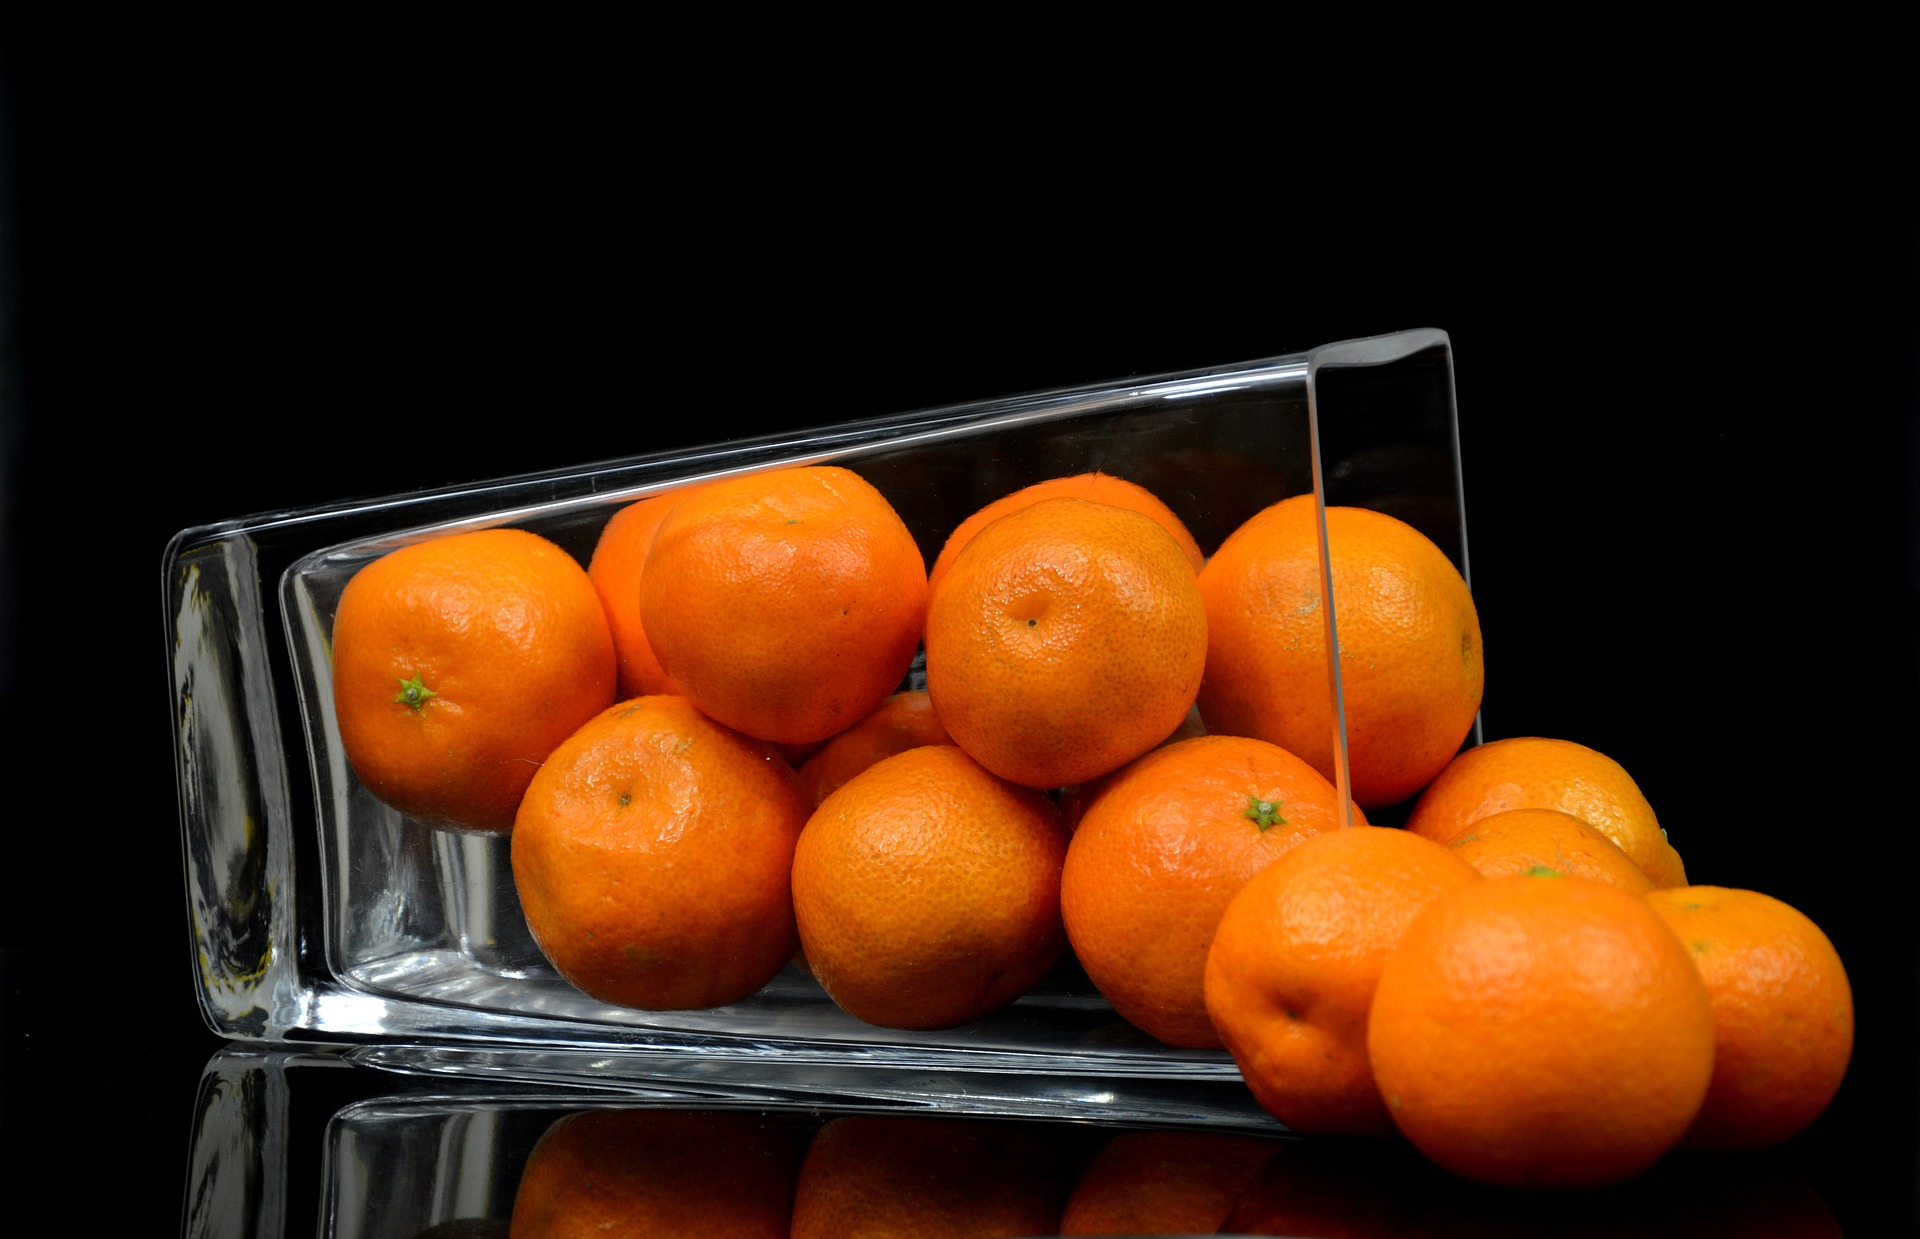 Mandarinetto, il digestivo facile da preparare in casa